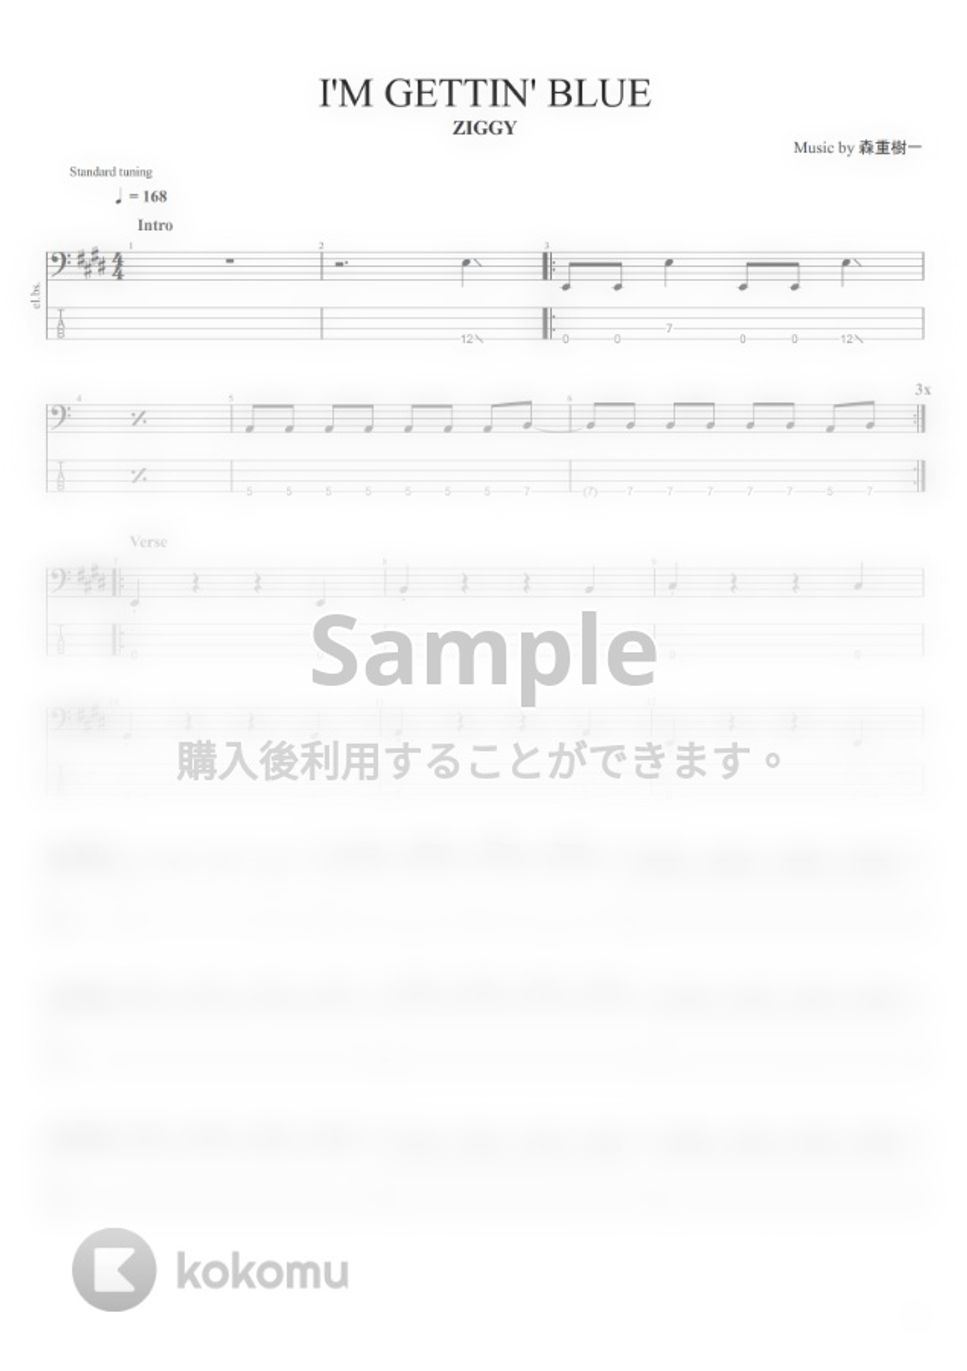 ZIGGY - ZIGGY楽譜集 (15曲) タブ + 五線譜 by まっきん